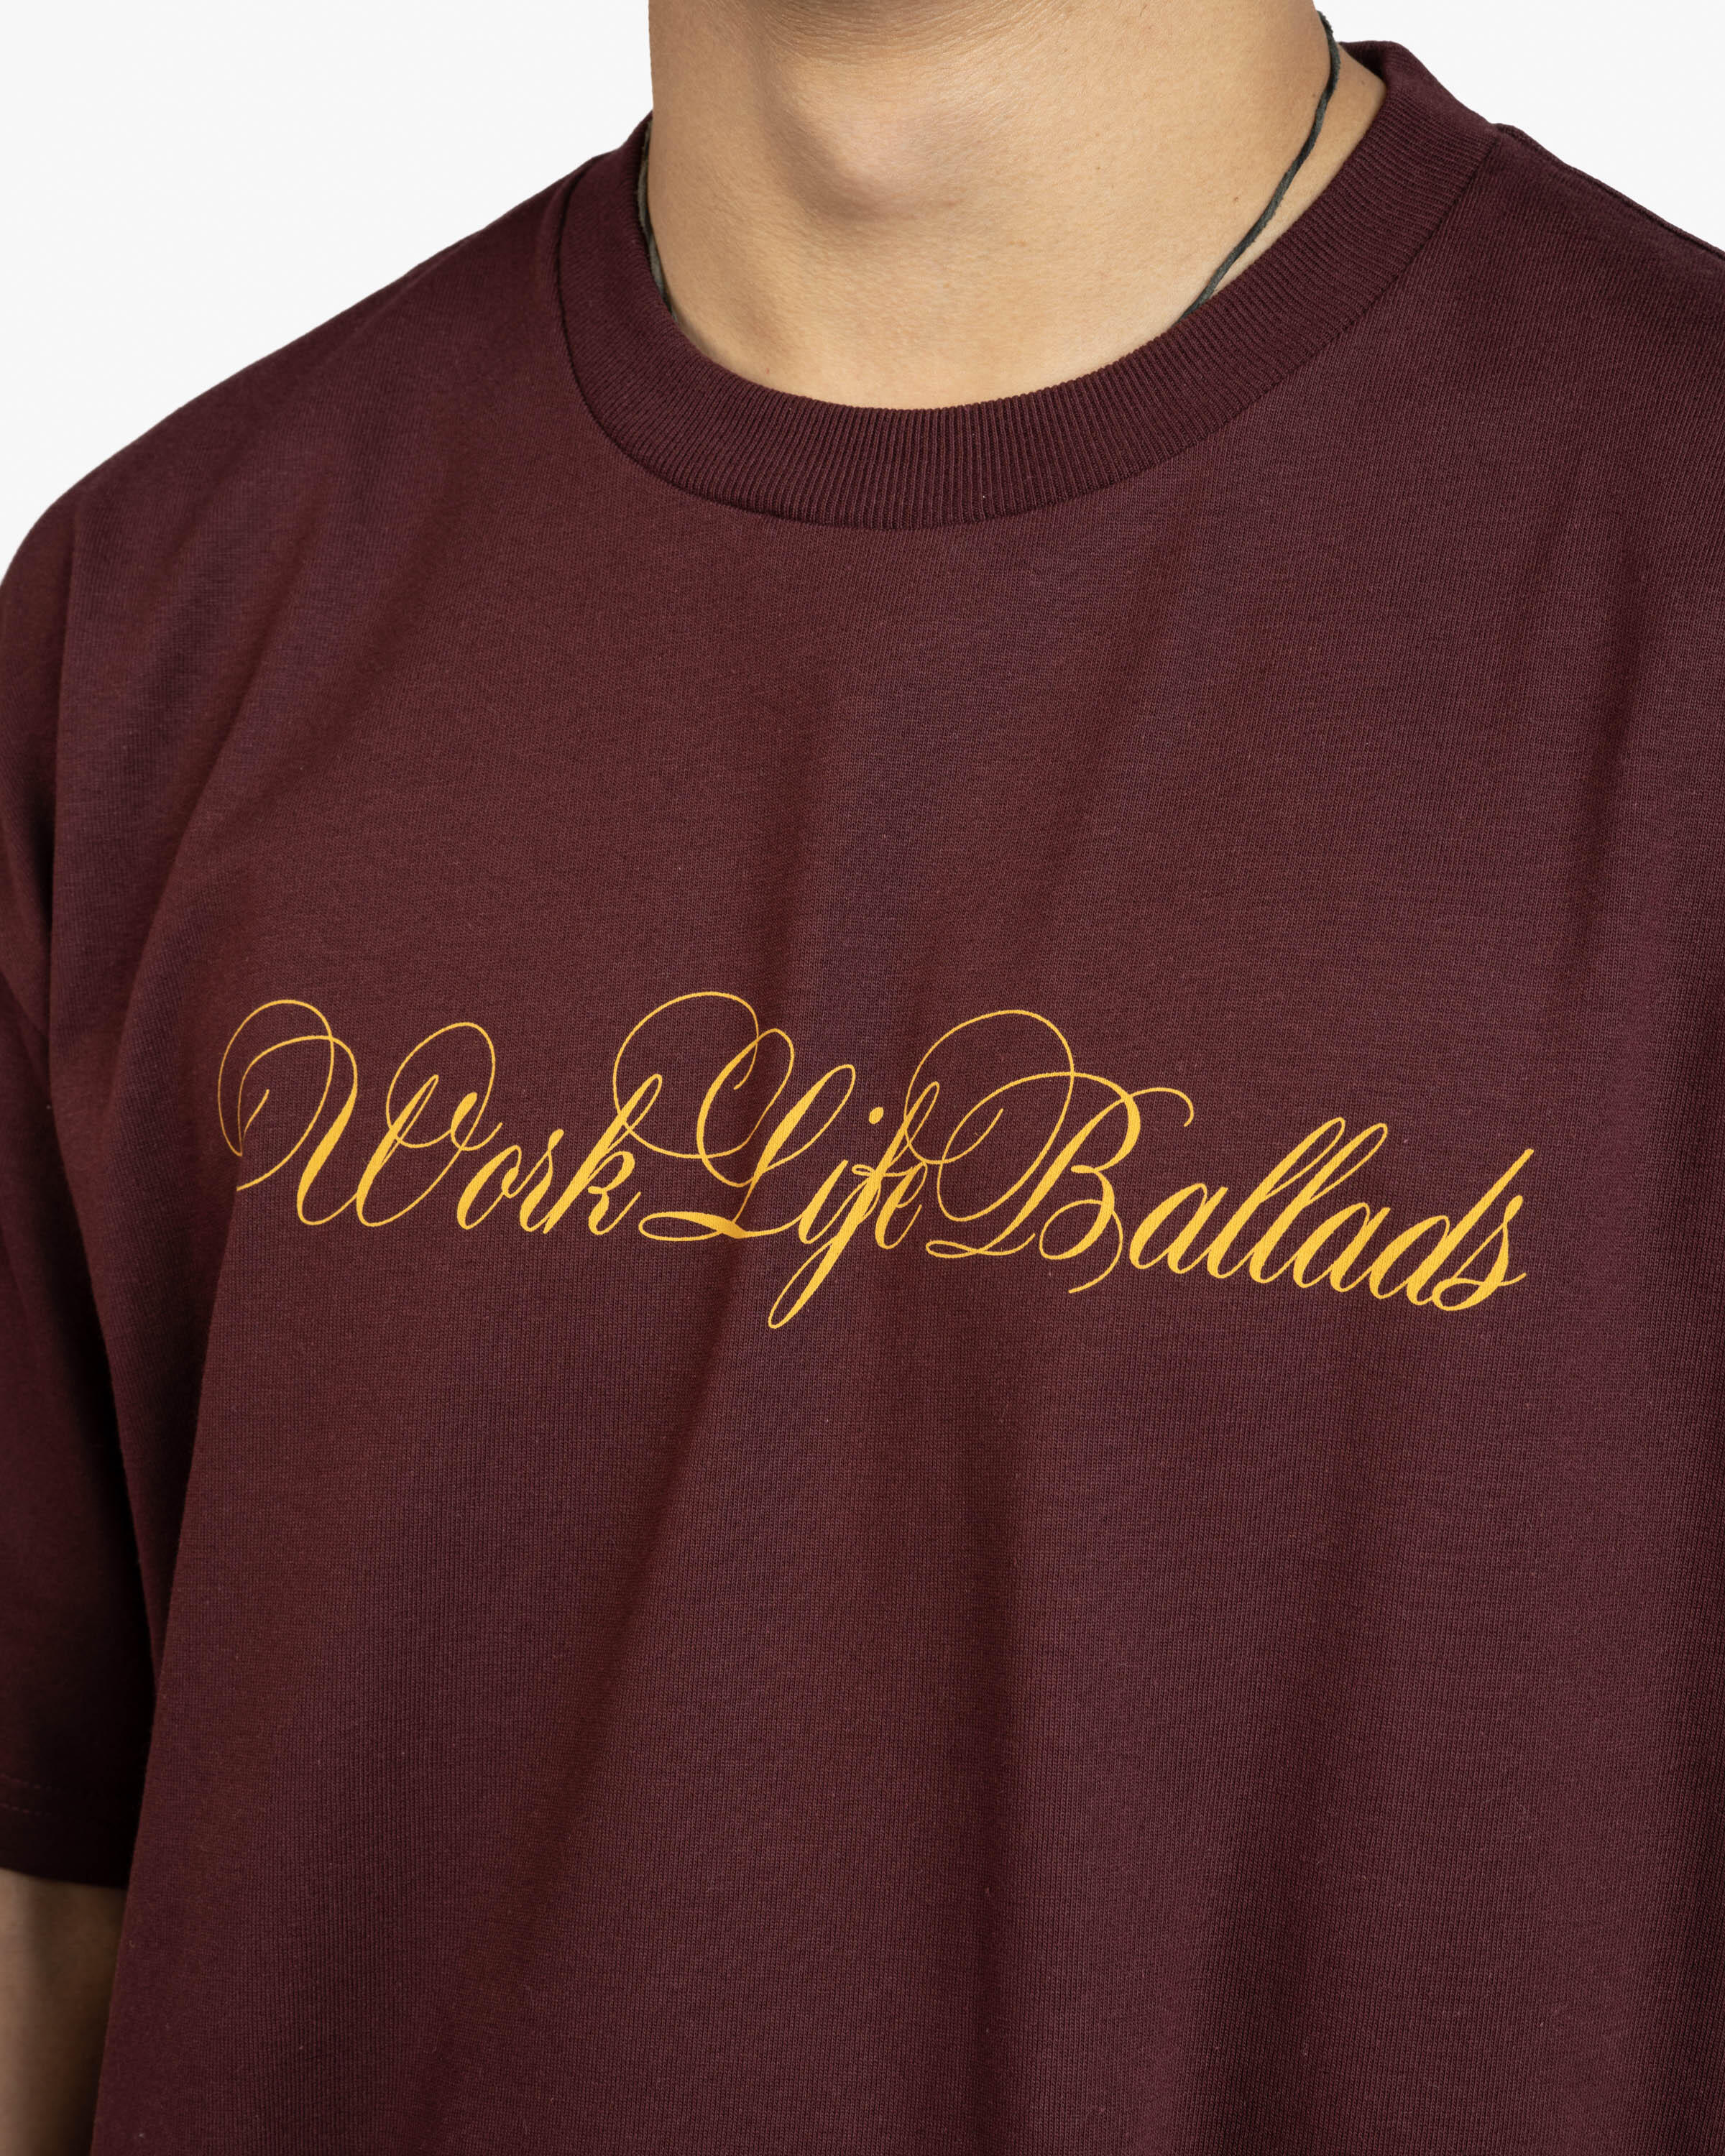 Carhartt WIP S/S Work Life Ballads T-Shirt